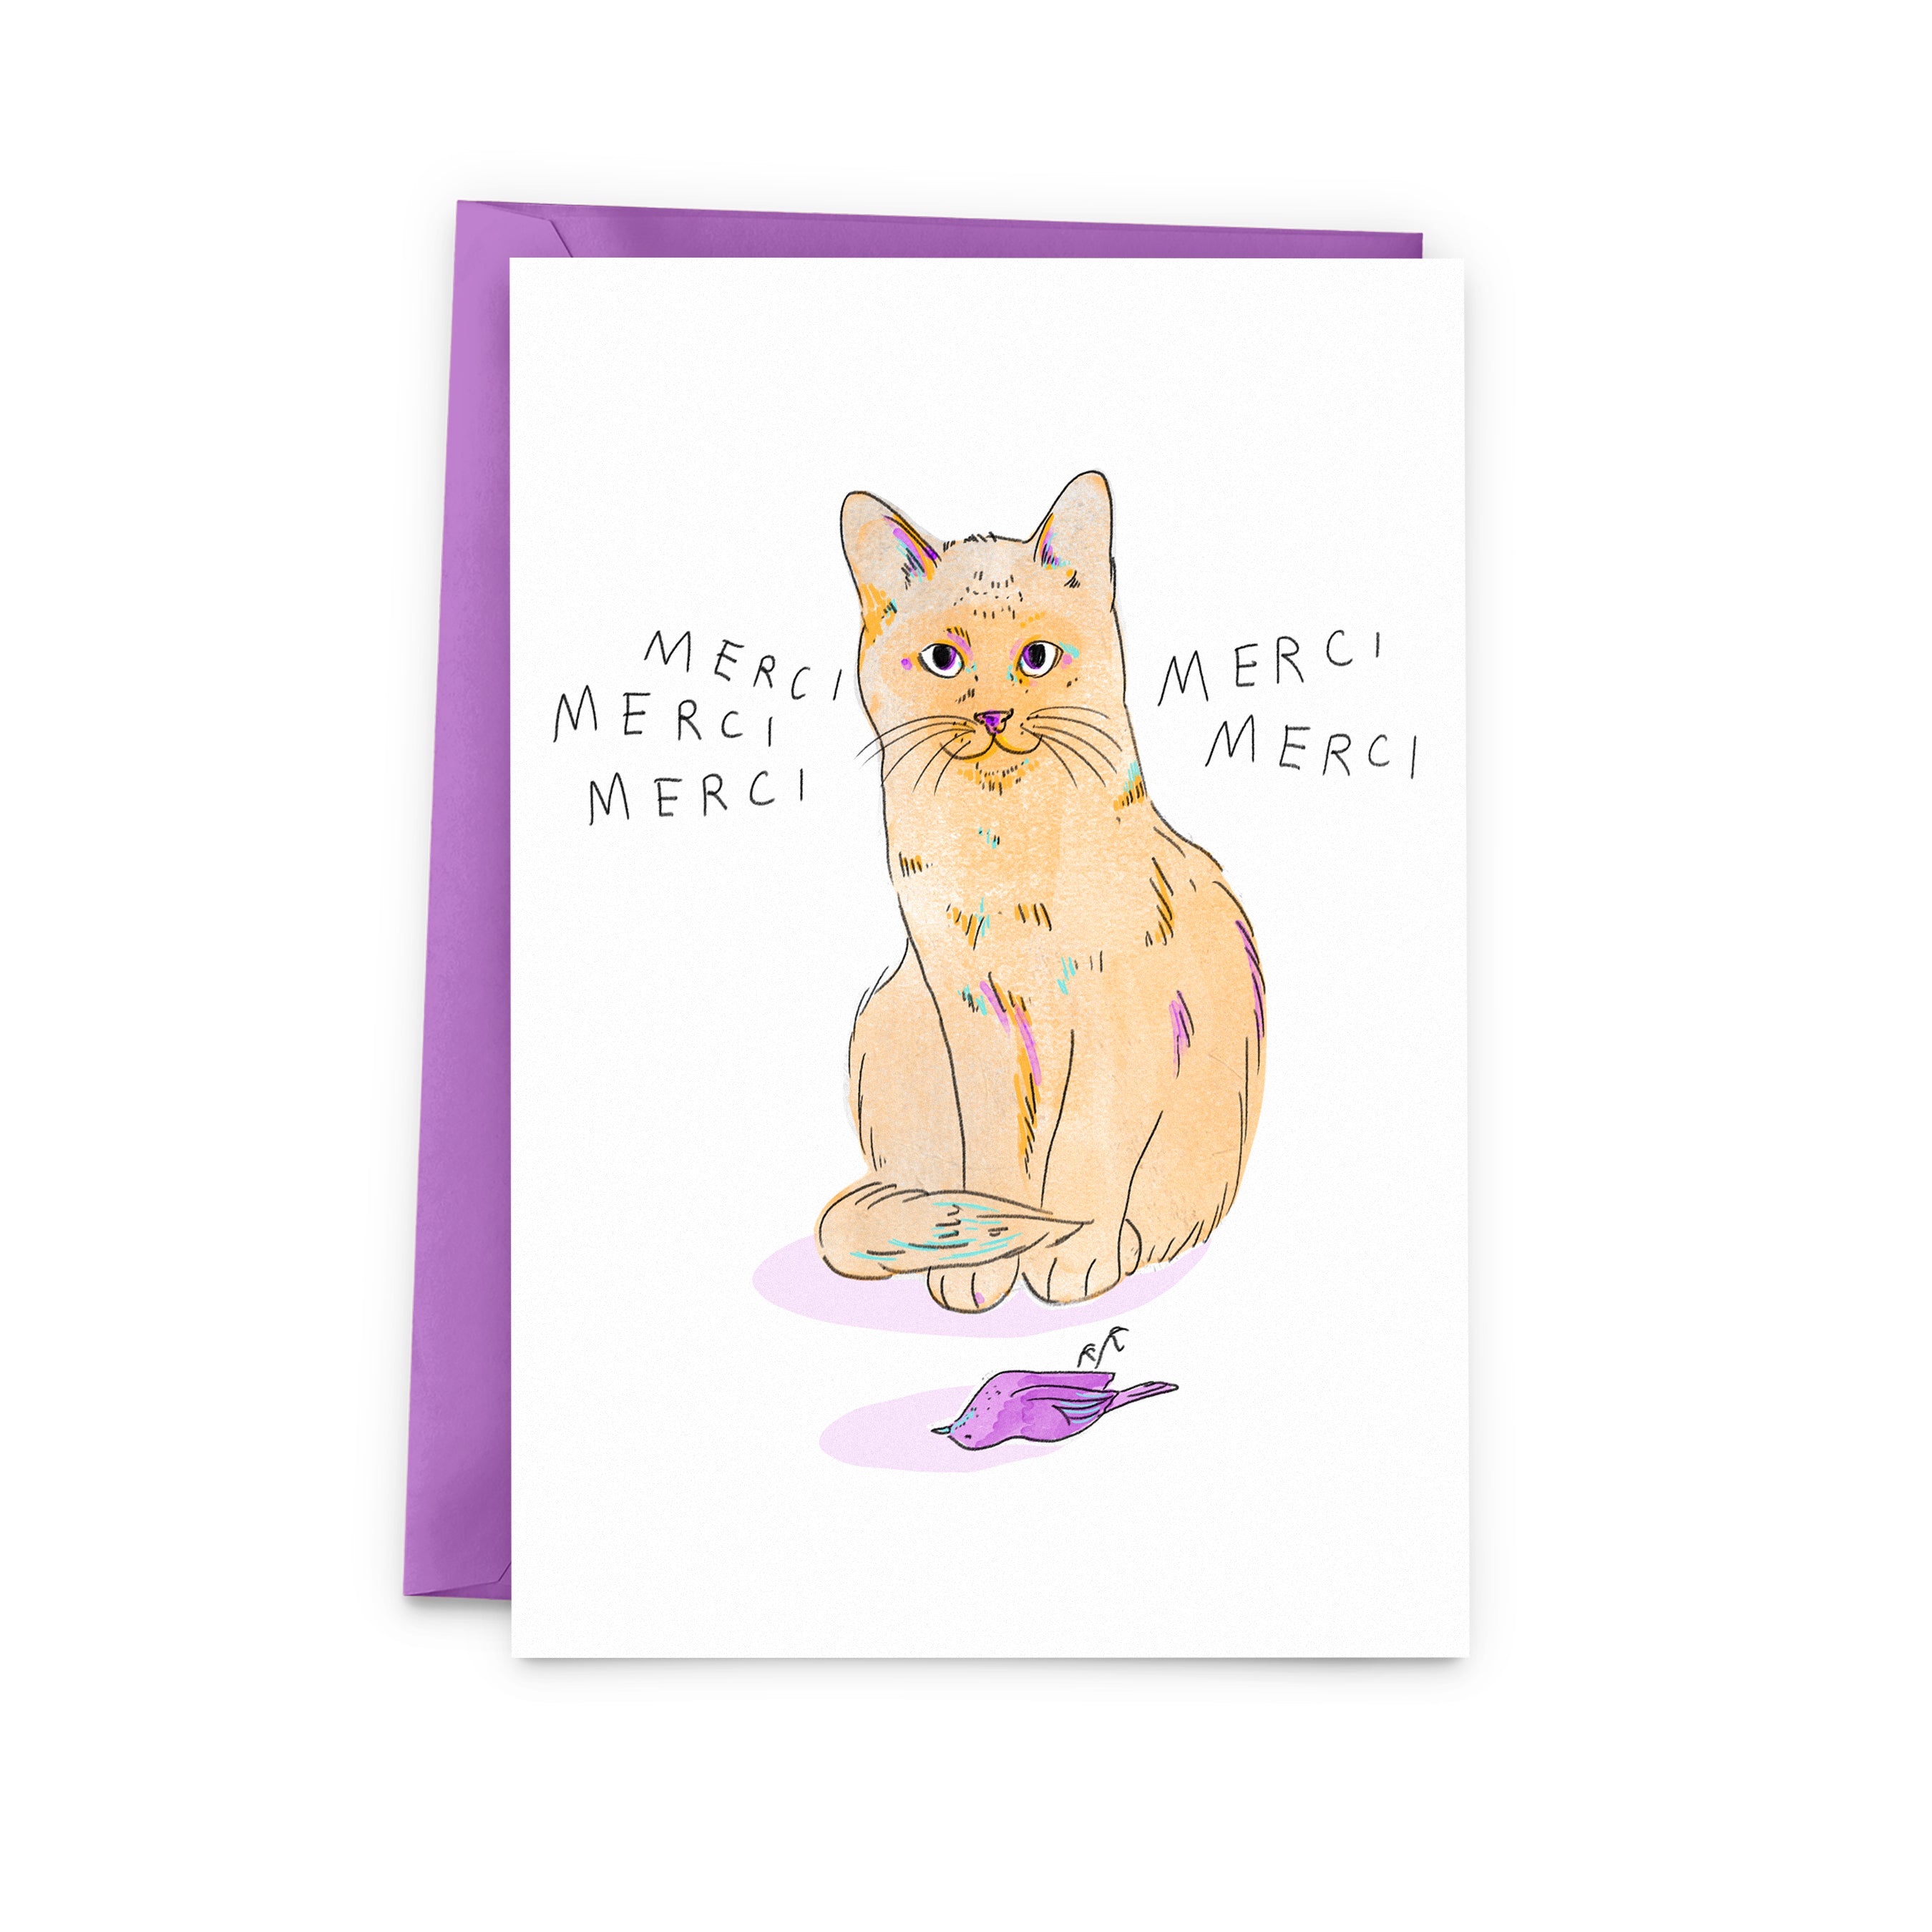 Thanks Kitten Card